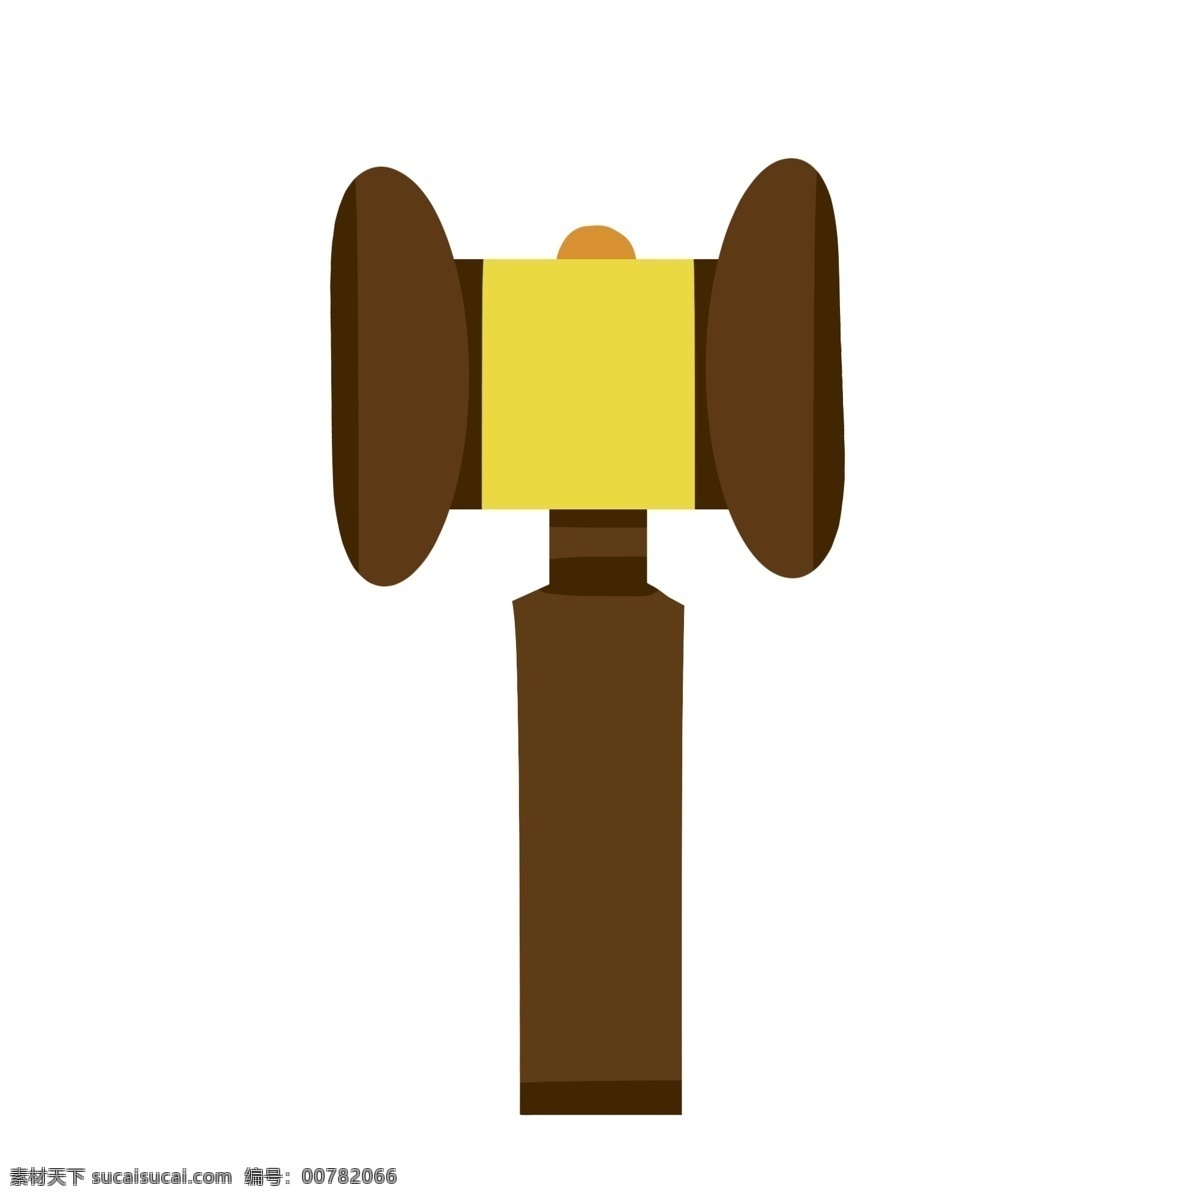 一个 深褐色 法 槌 法槌 锤子 法官 创意 褐色 司法 法律 诉讼 法律体系 拍卖 手绘法槌